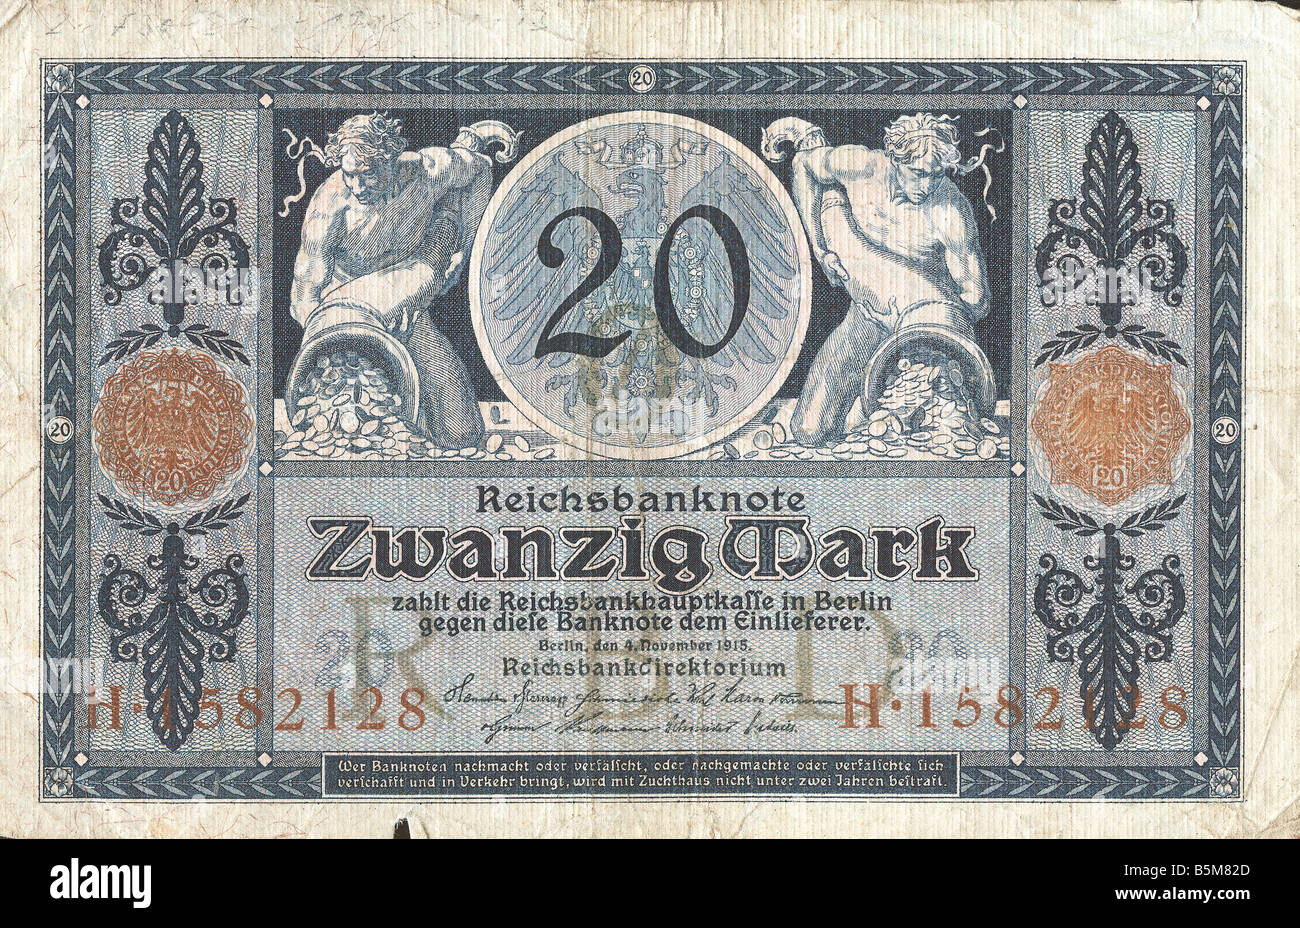 2 F30 D1 1915 1 B 20 segna 1915 finanzia le banconote del Reich tedesco di banconote dai tempi della prima guerra mondiale 1914 18 Venti Mark Foto Stock